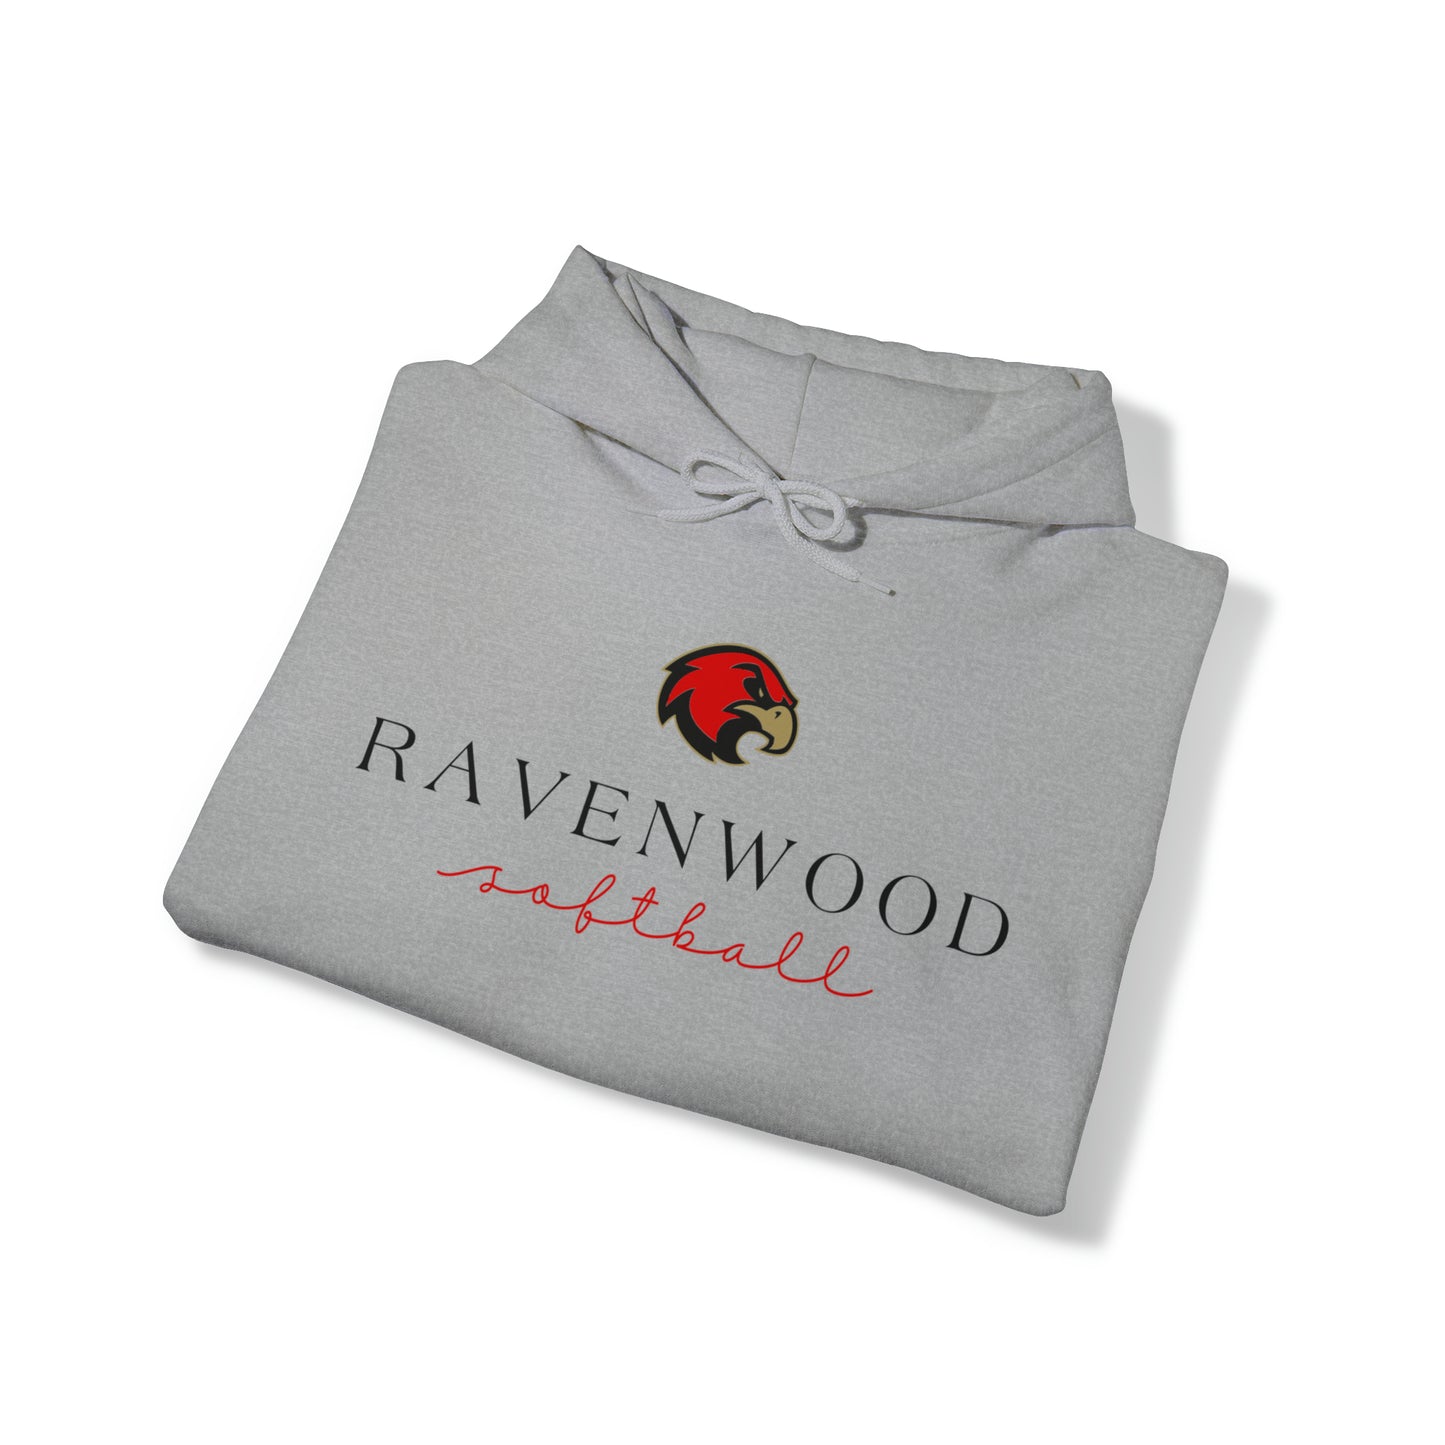 Ravenwood Softball Cursive Hoodie